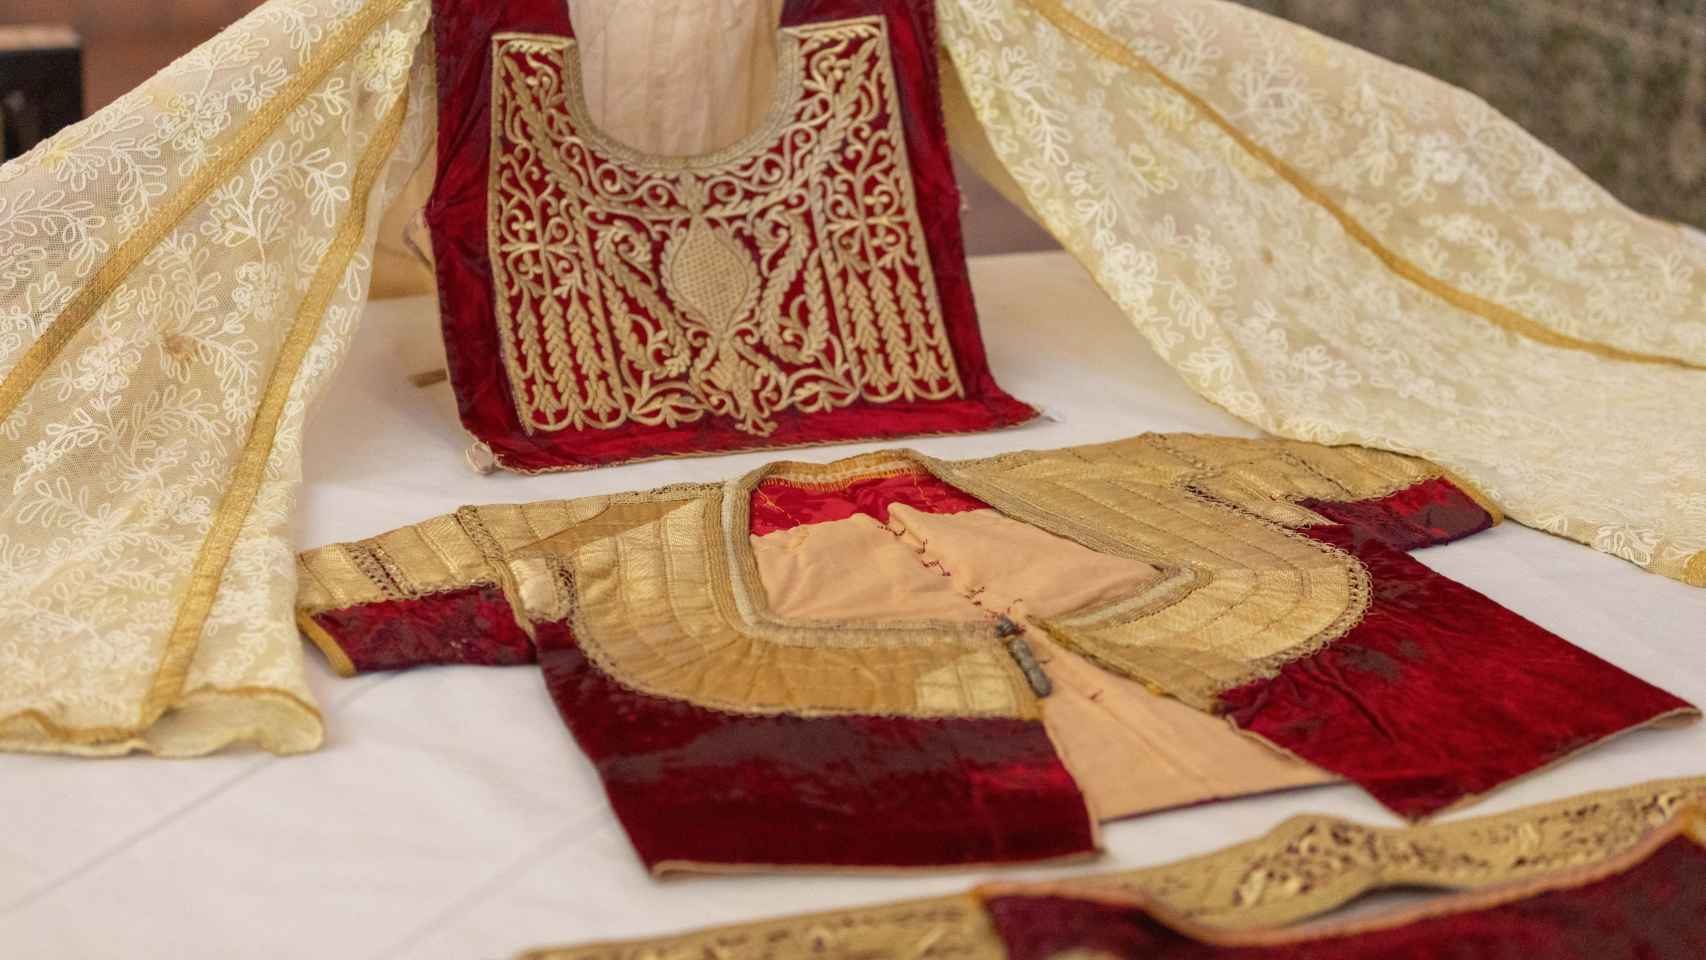 El Museo Sefardí de Toledo presenta su última joya: un traje de novia con más de 100 años